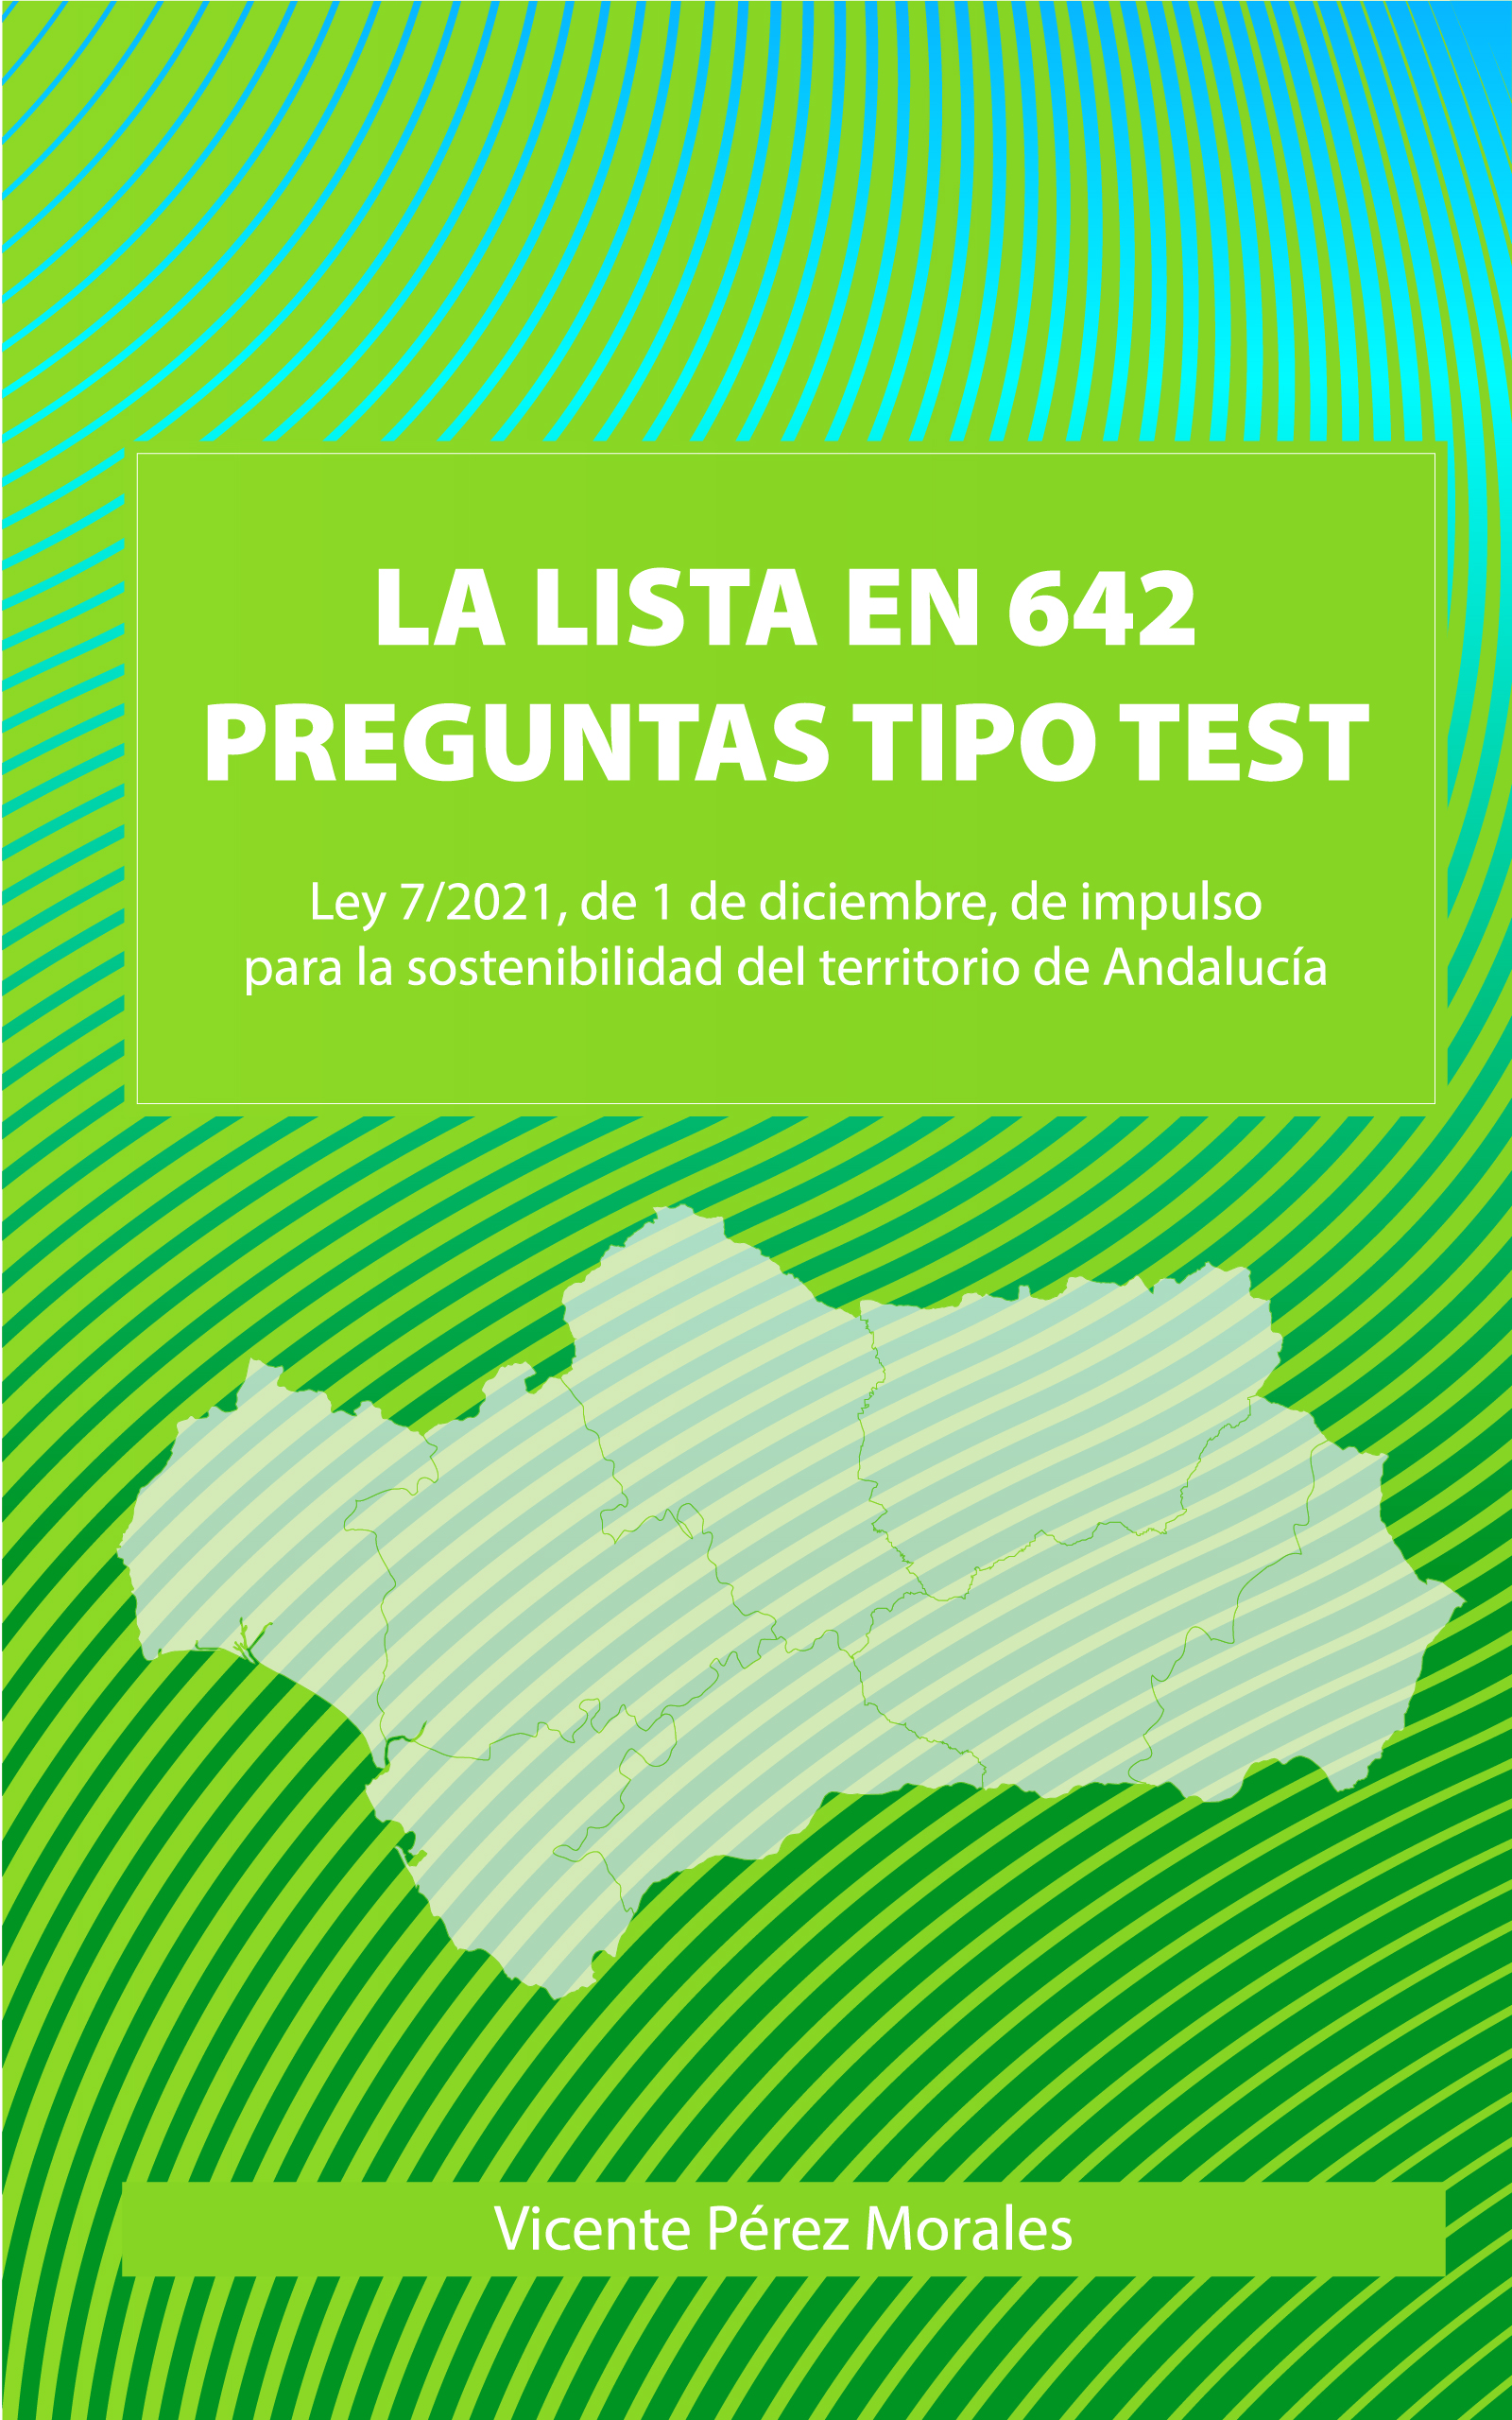 La LISTA en 642 preguntas tipo test, de Vicente Pérez Morales